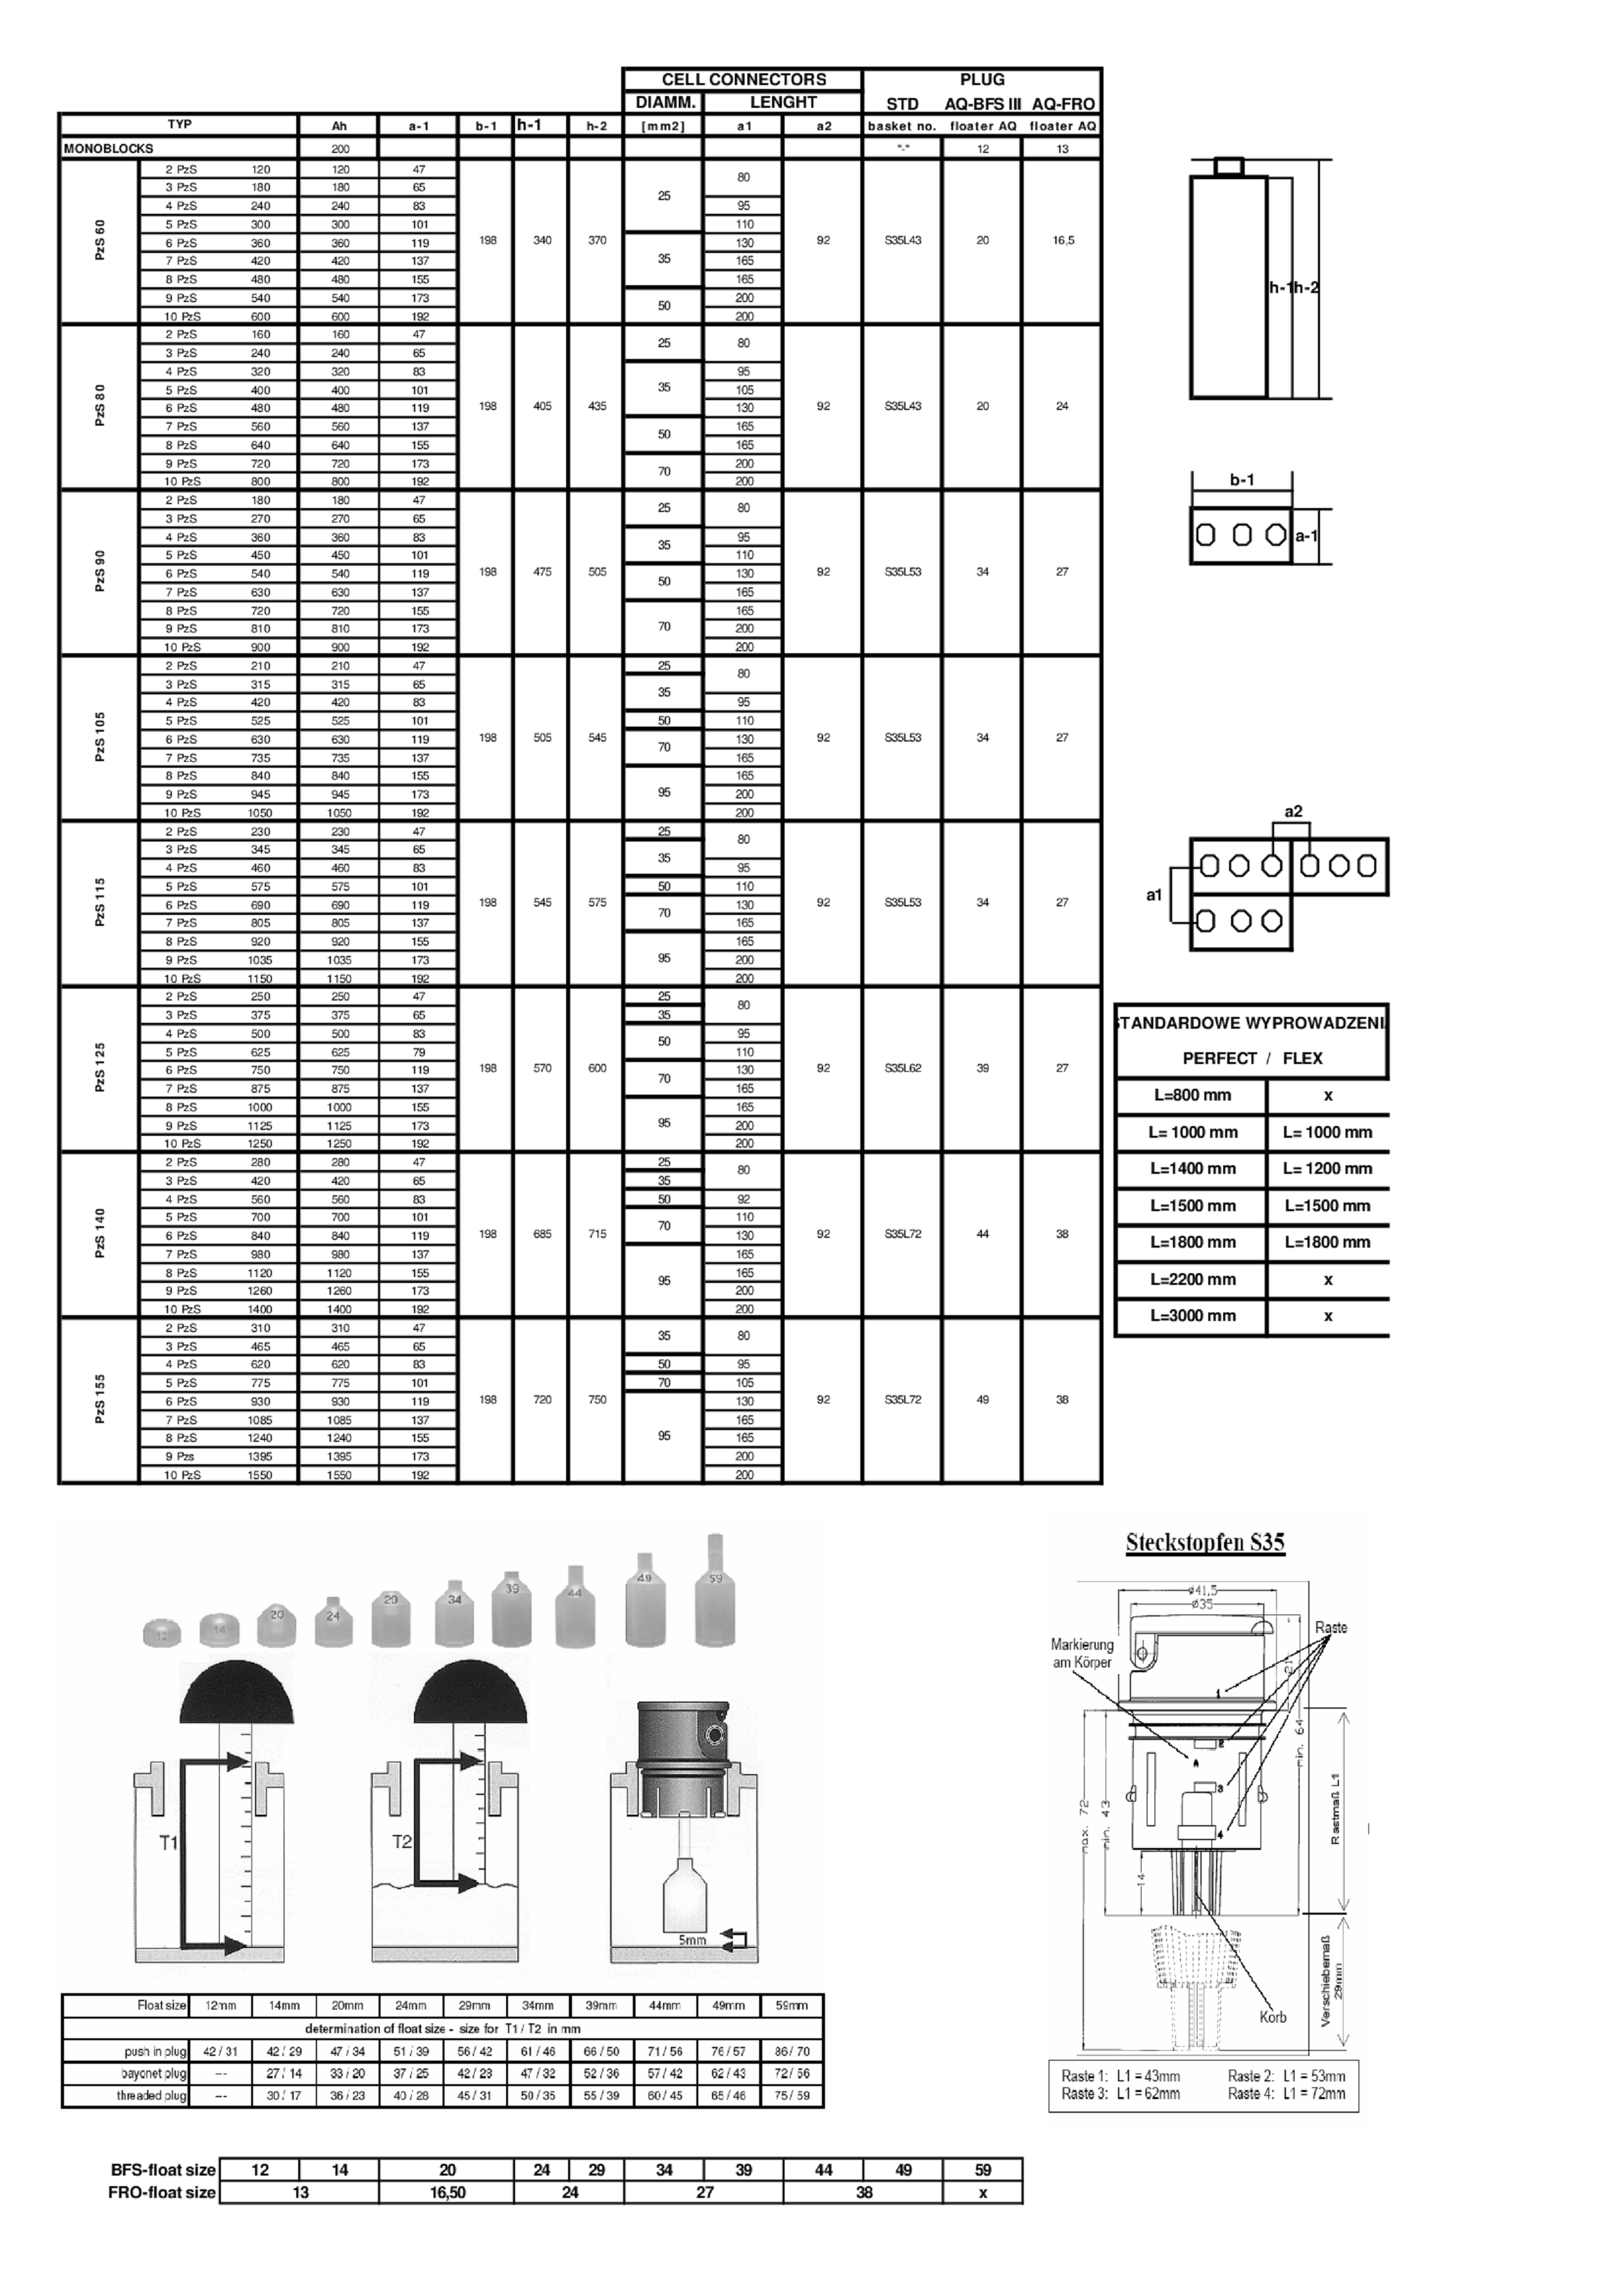 KORKI   PRZEKROJE Selector 2007 1 - Pływak systemu uzupełniania wody 21x16,5